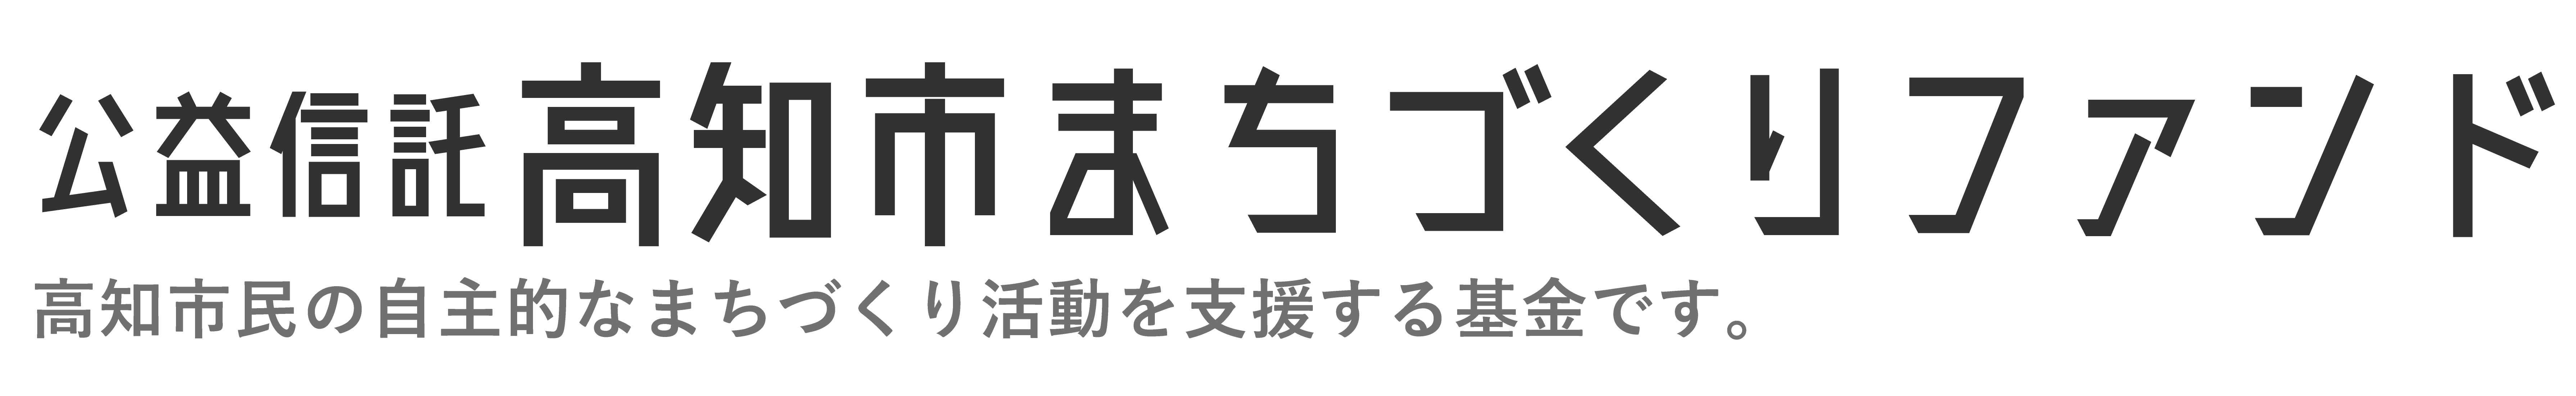 【公式】公益信託高知市まちづくりファンド.